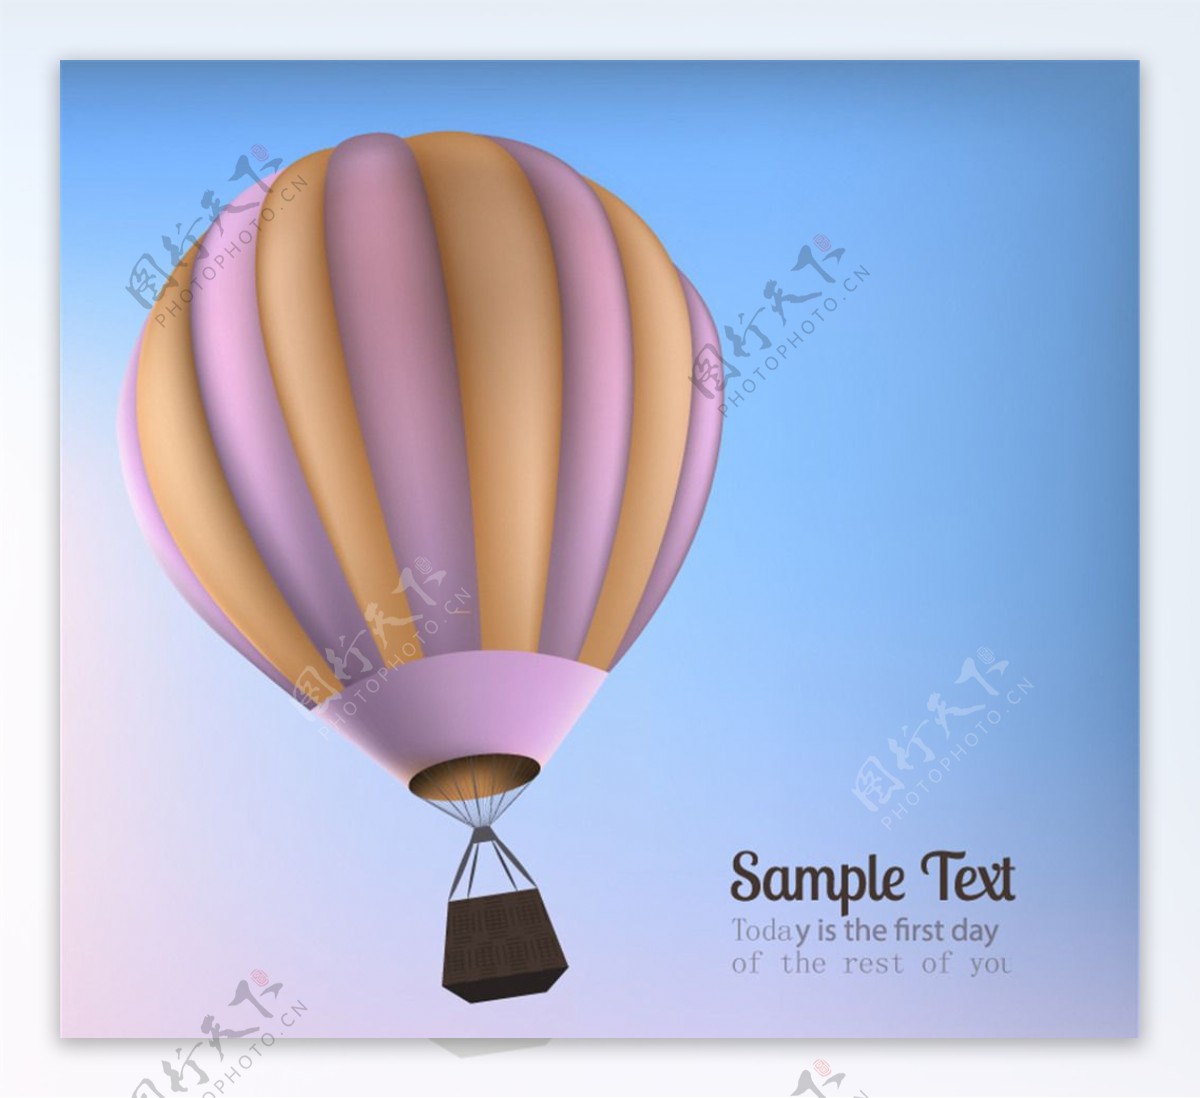 创意热气球文本背景矢量素材